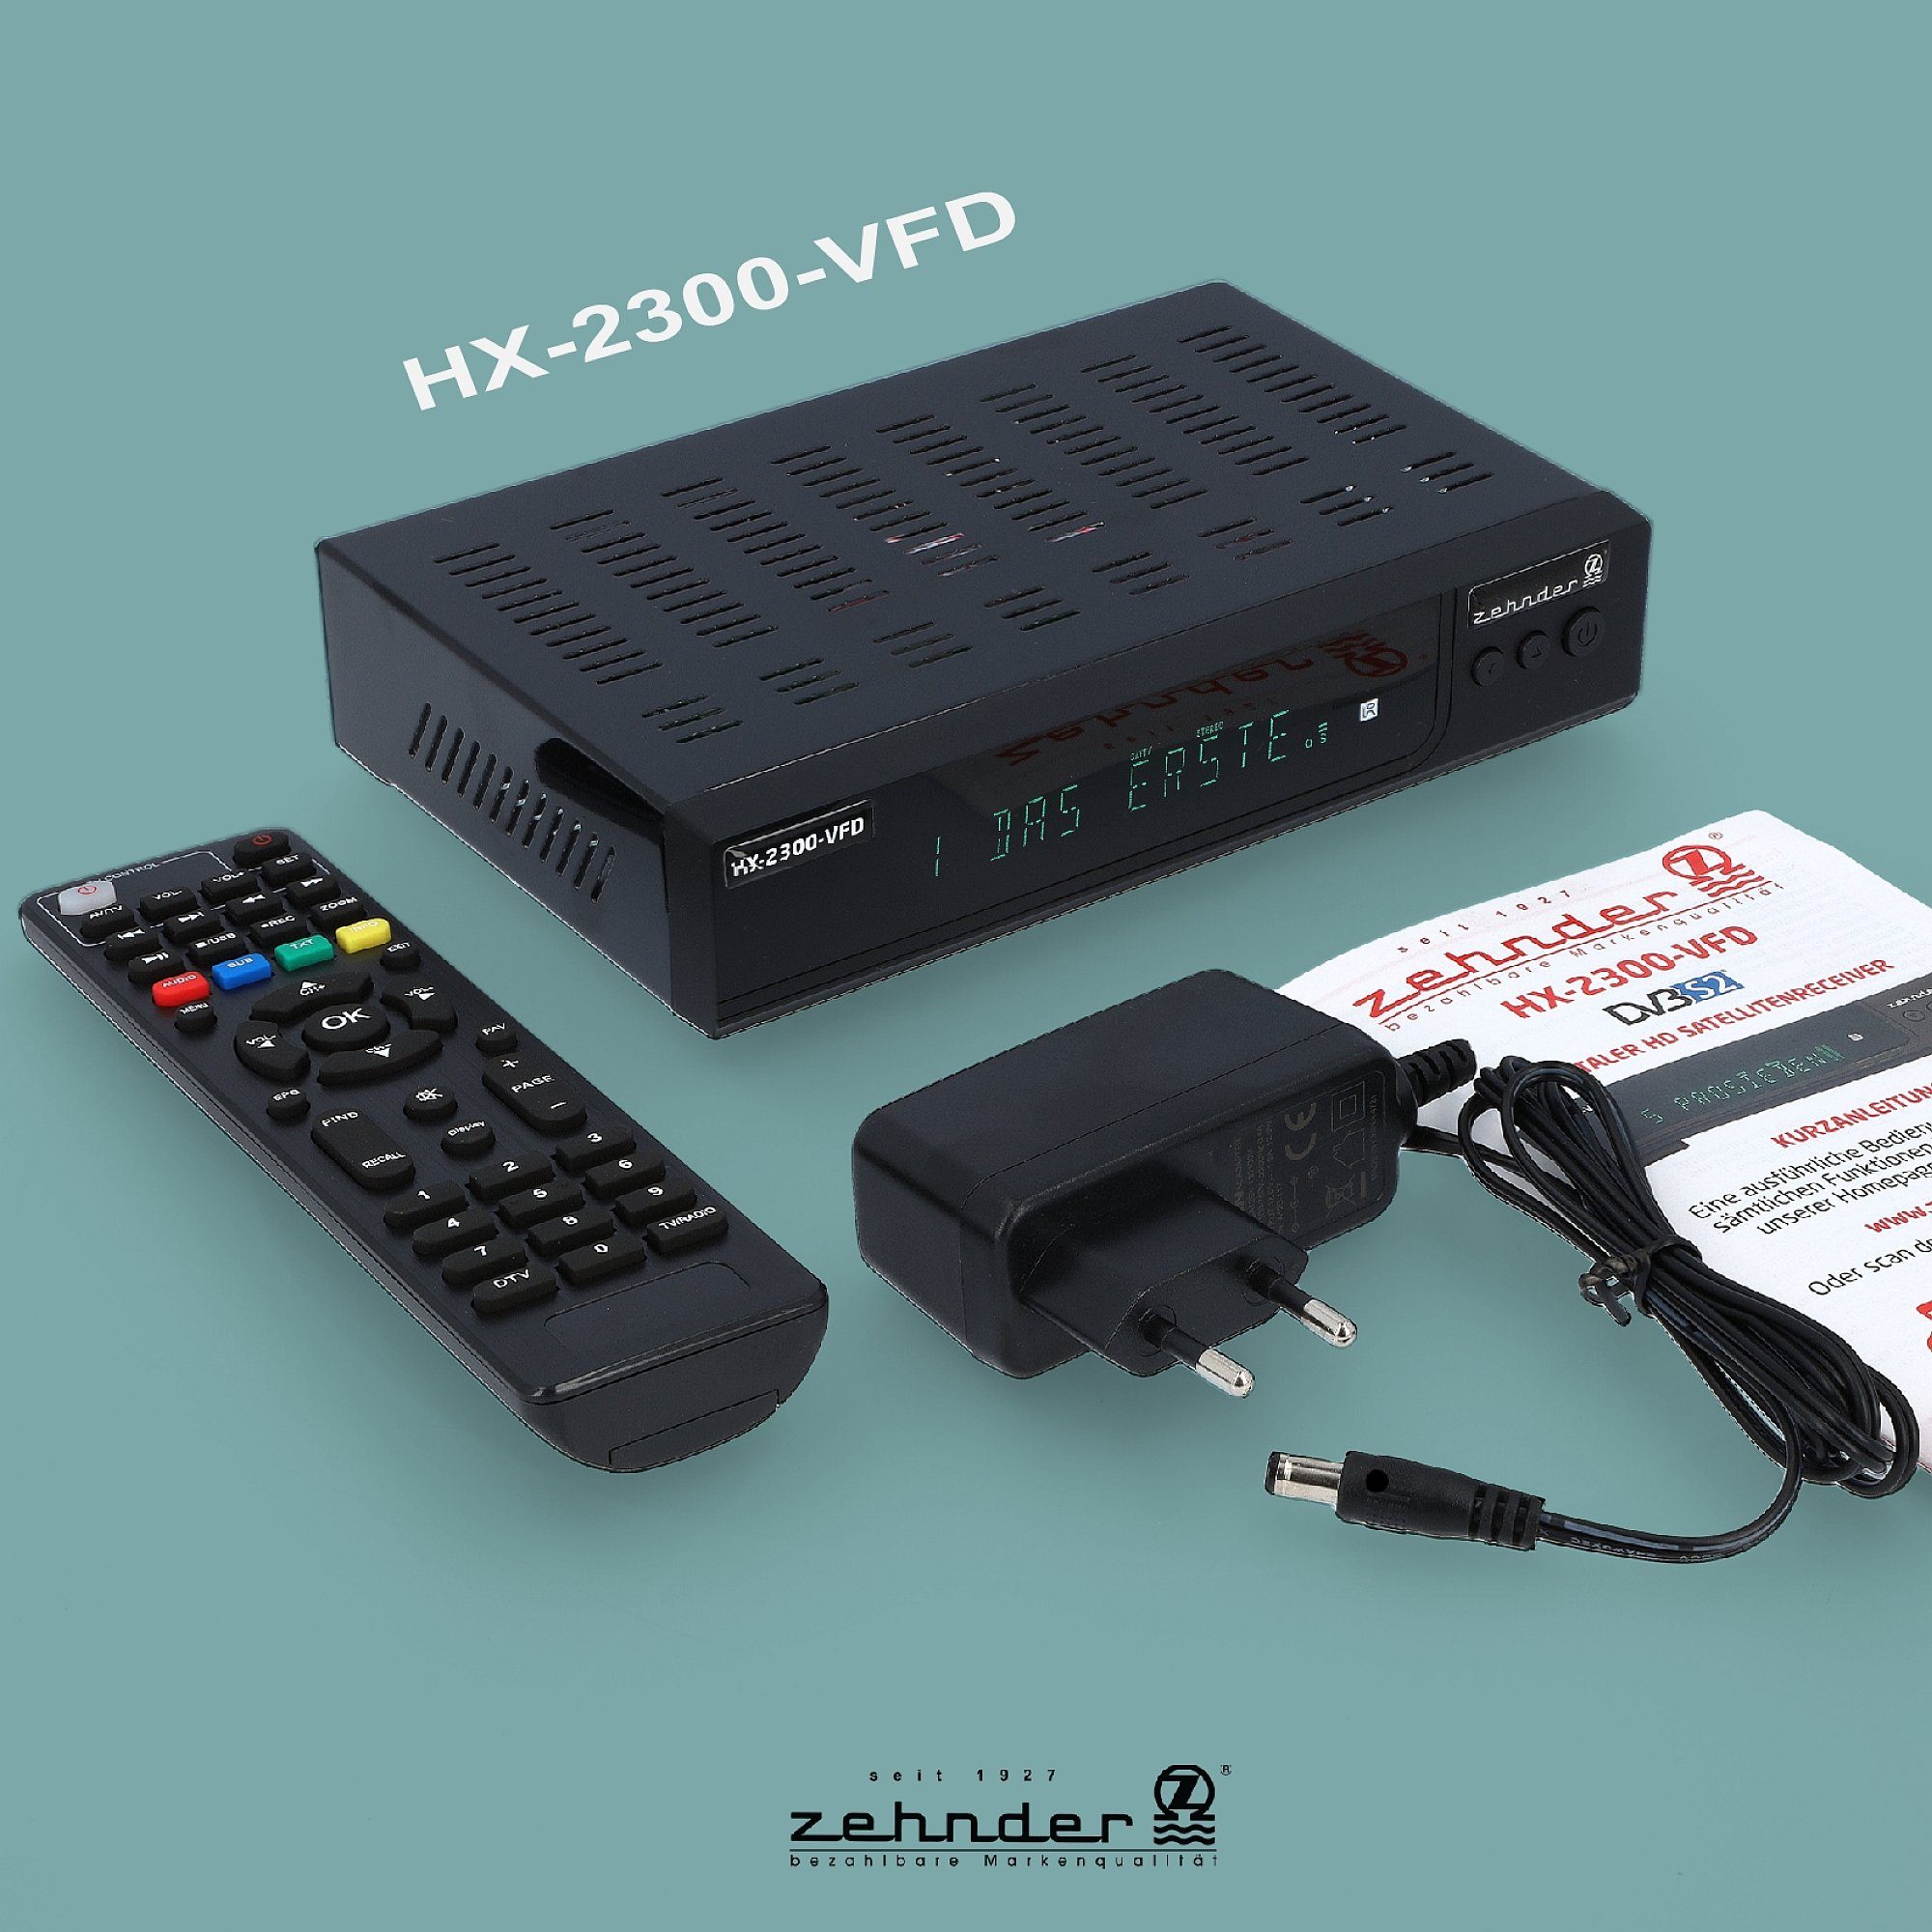 Zehnder HX-2300-Alphanumerisches Display - SAT-Receiver tauglich) Coaxial, SCART, 12V Einkabel USB, HDMI, PVR, (AAC-LC